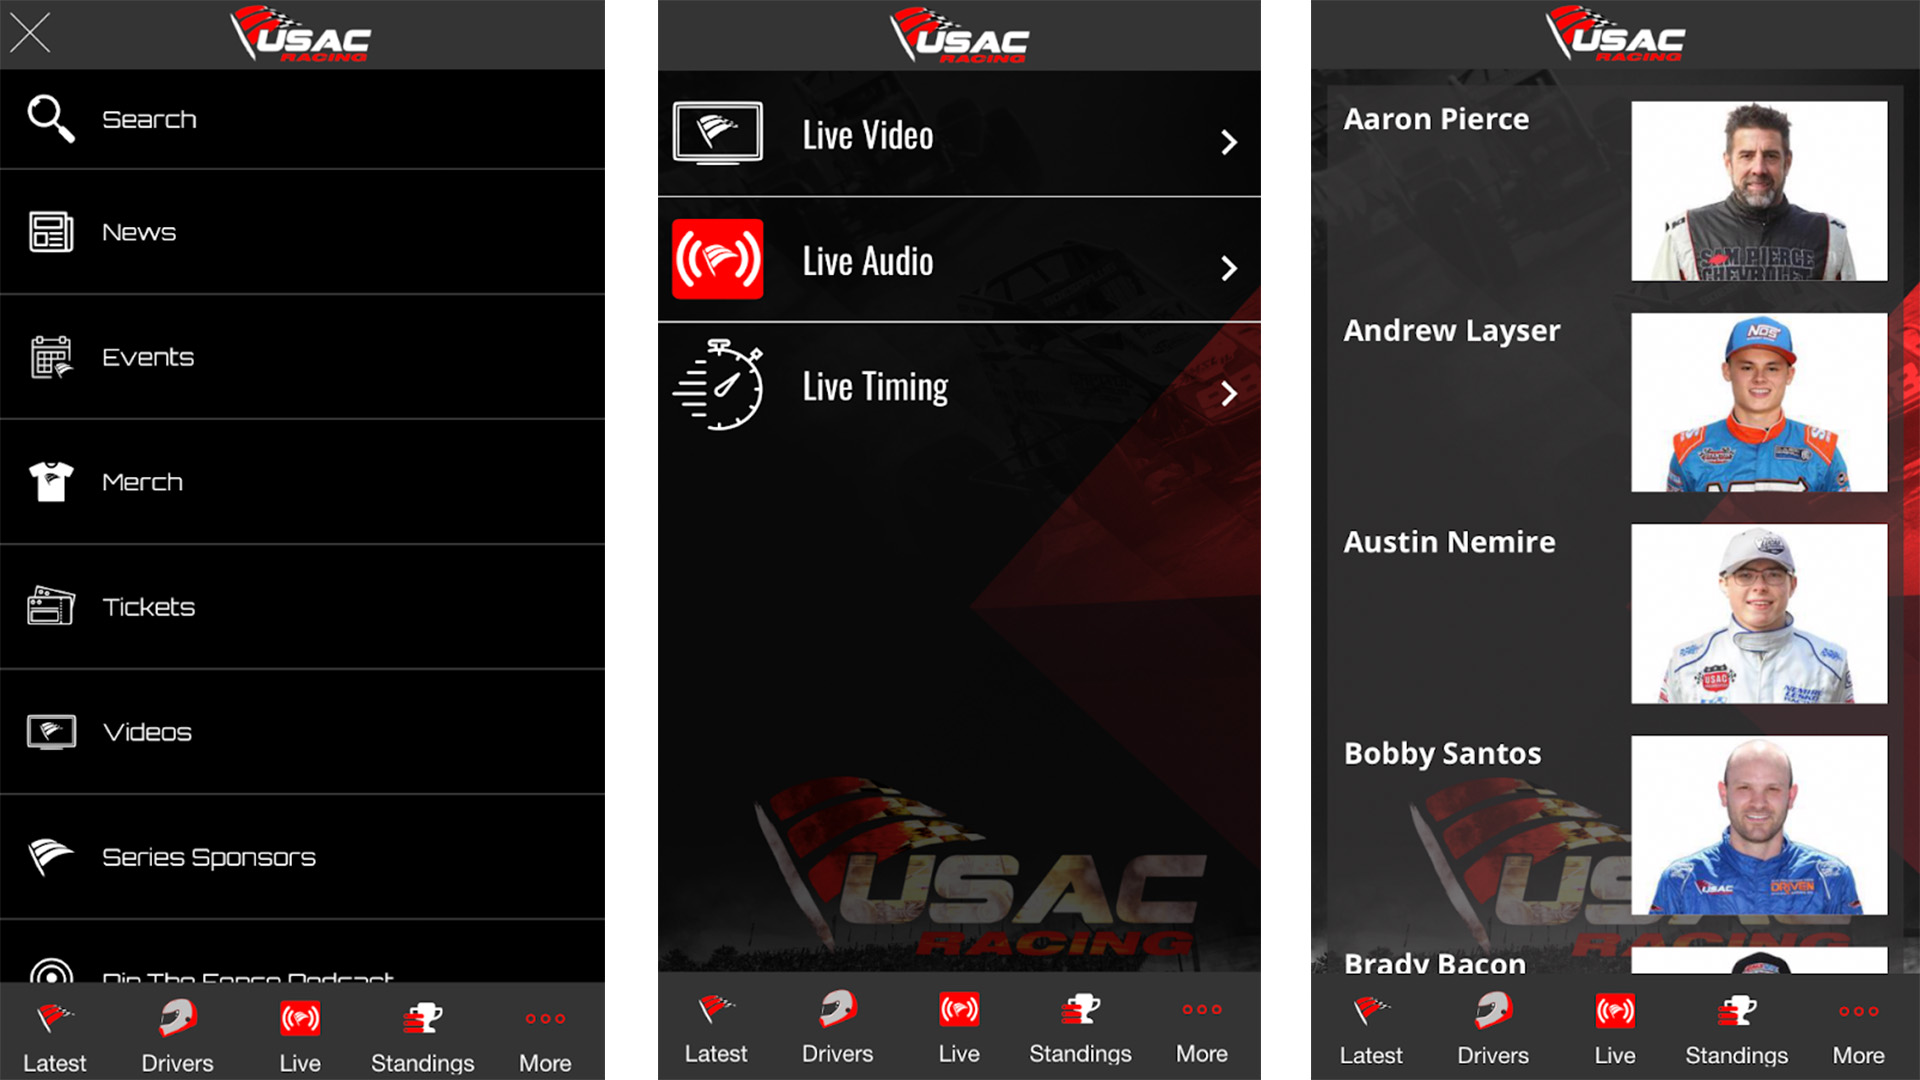 USAC Racing screenshot 2020